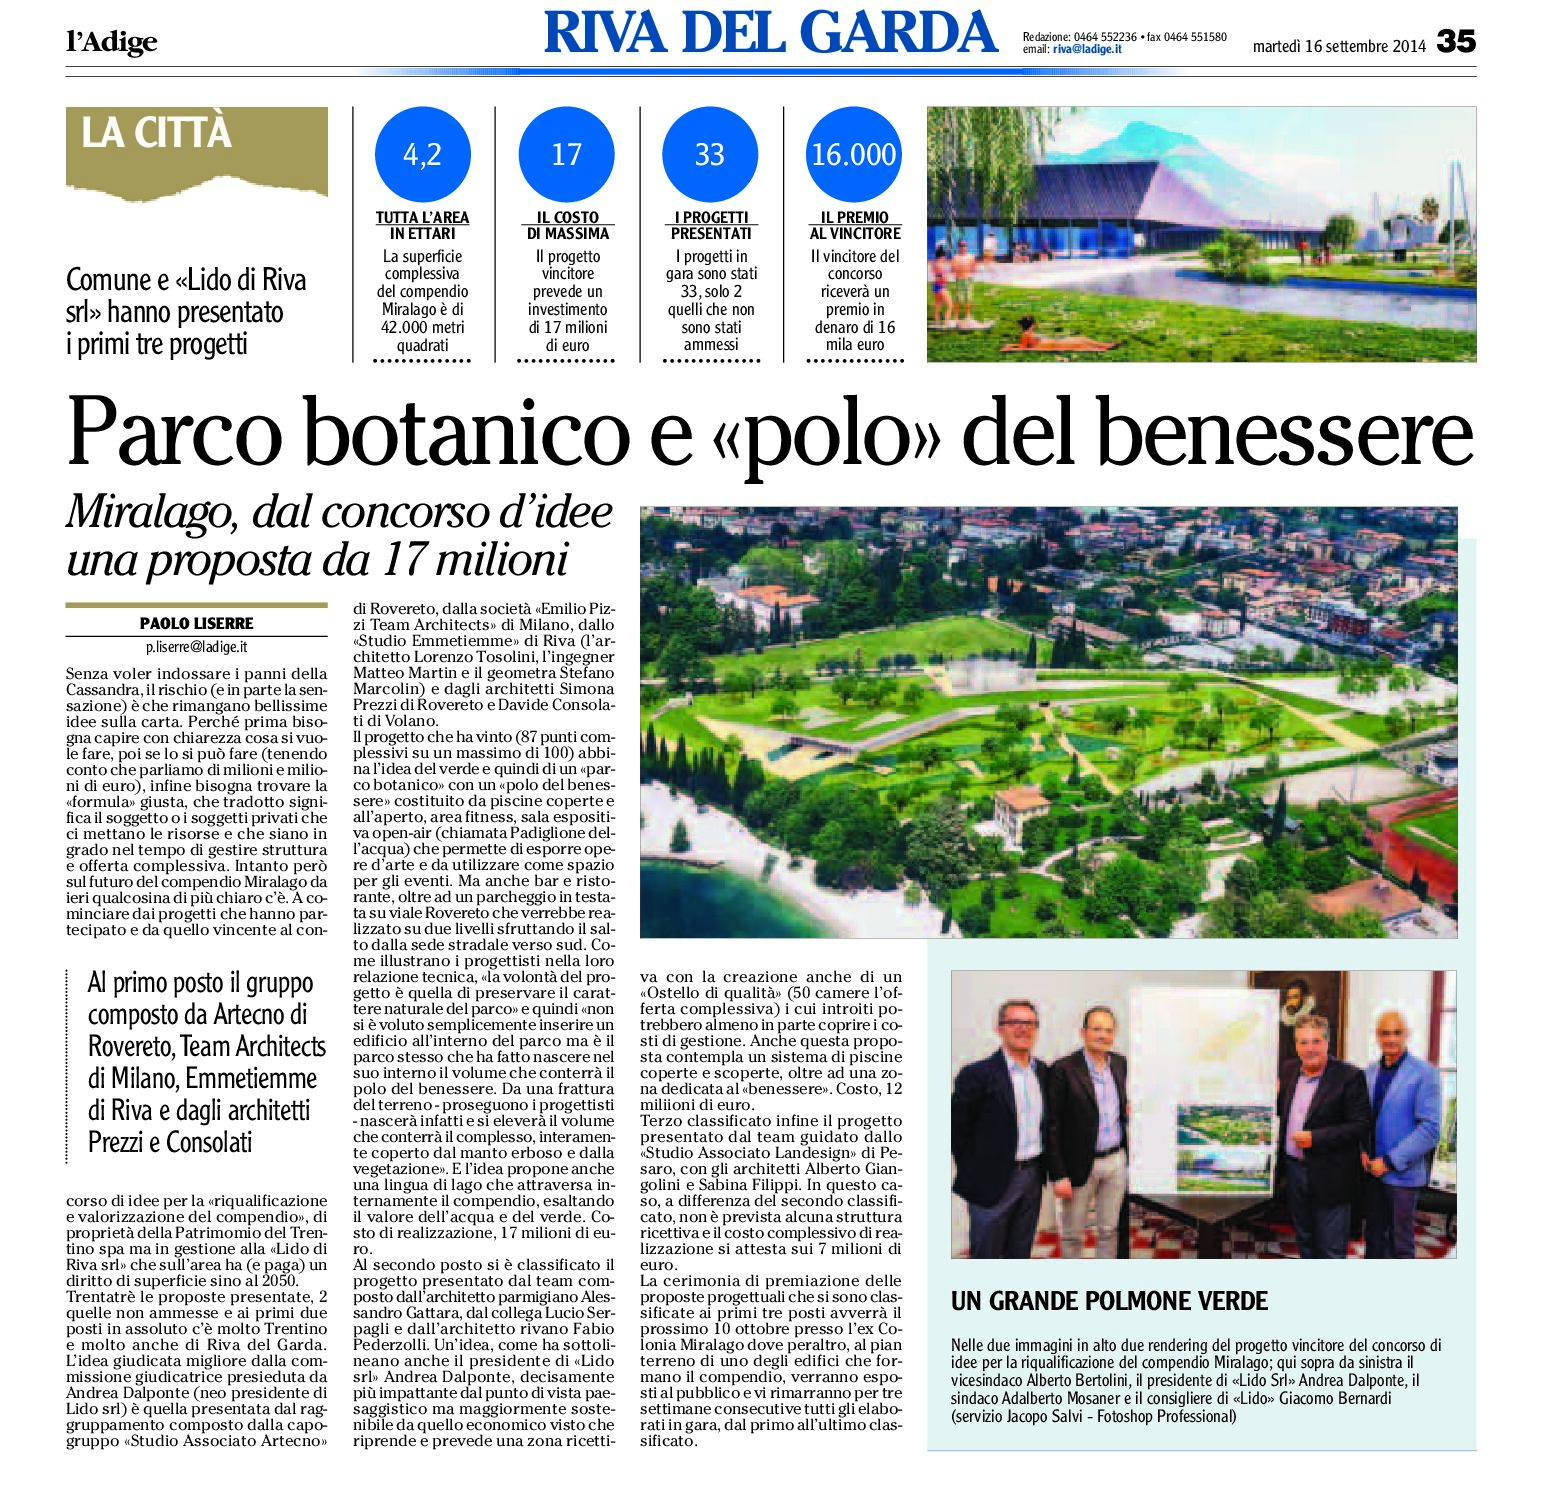 Riva: Miralago, dal concorso d’idee, Parco botanico e polo del benessere